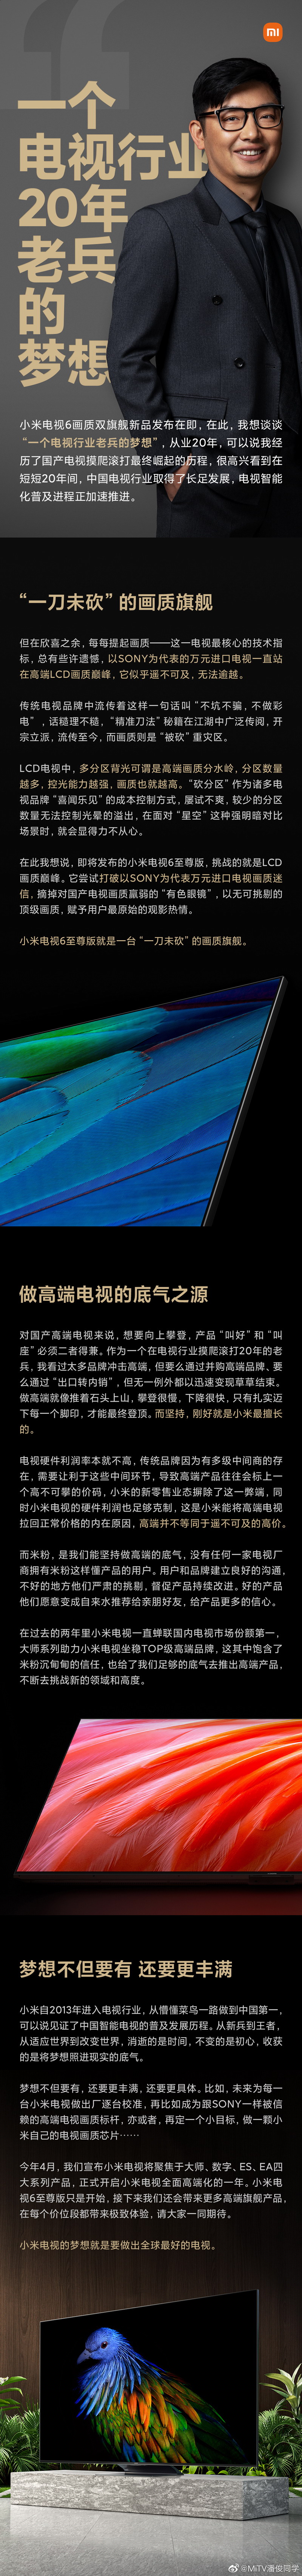 小米电视6至尊版宣称高端LCD画质 全系百级分区起步